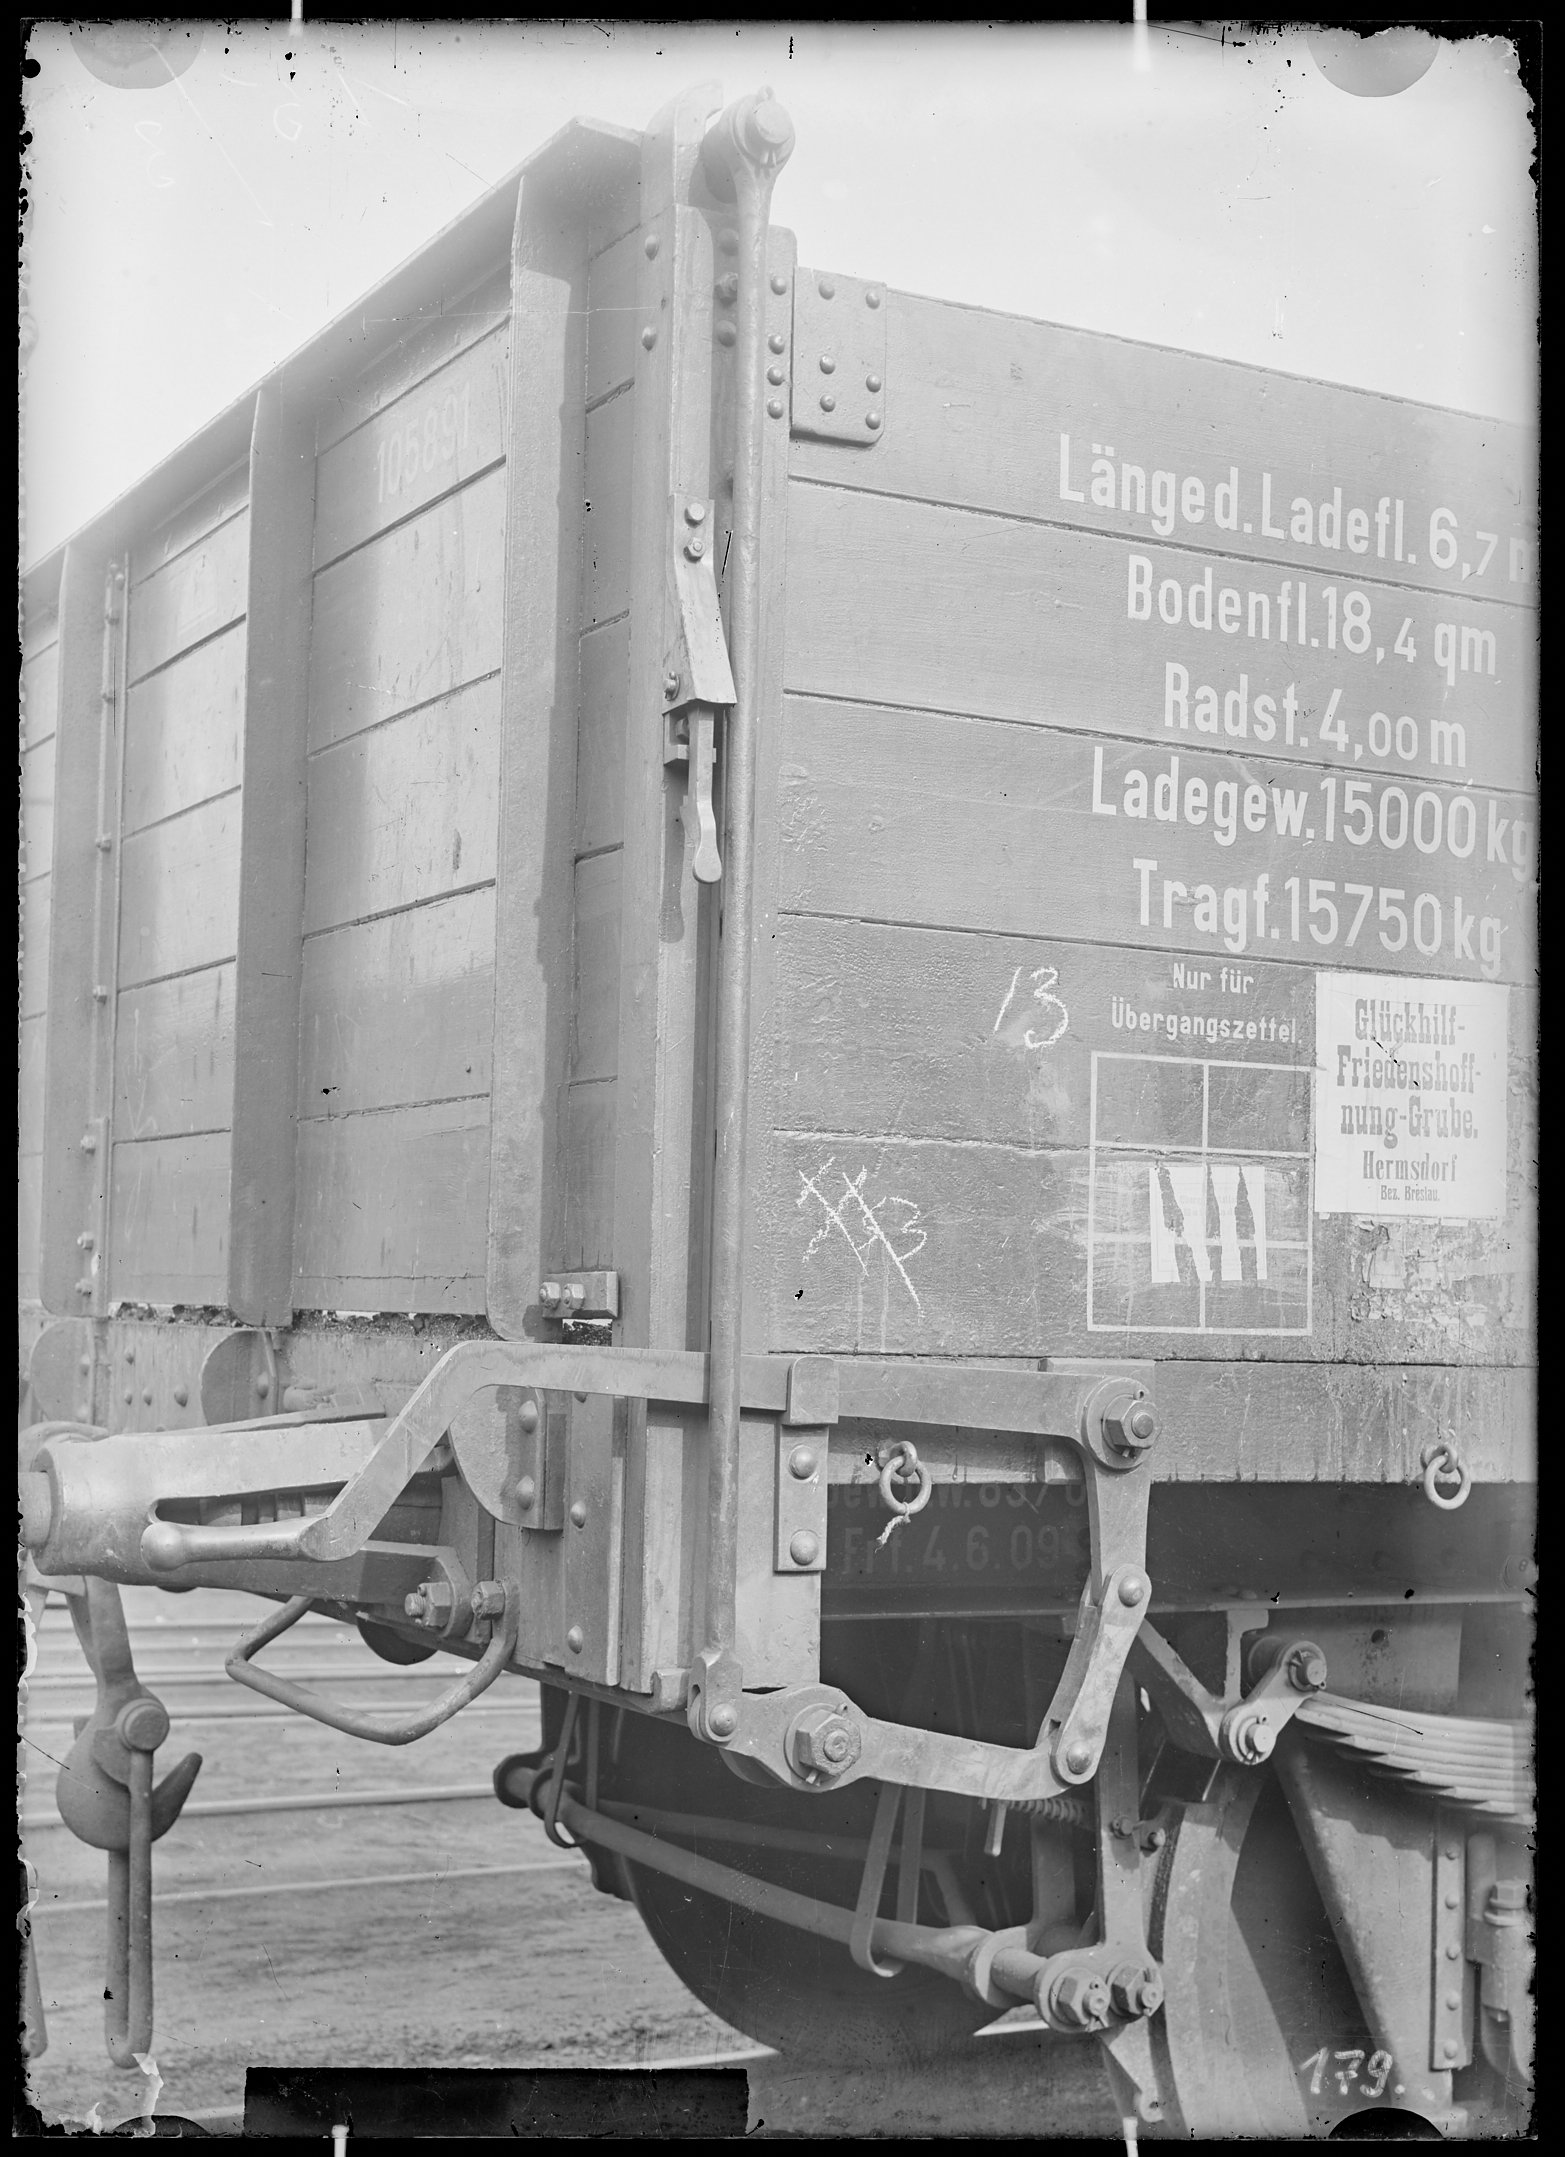 Fotografie: offener Güterwagen (Schrägansicht), Wagenfront über Achse, 1910. Glückhilf-Friedenshoffnung-Grube Hermsdorf Bez. Breslau? (Verkehrsmuseum Dresden CC BY-NC-SA)